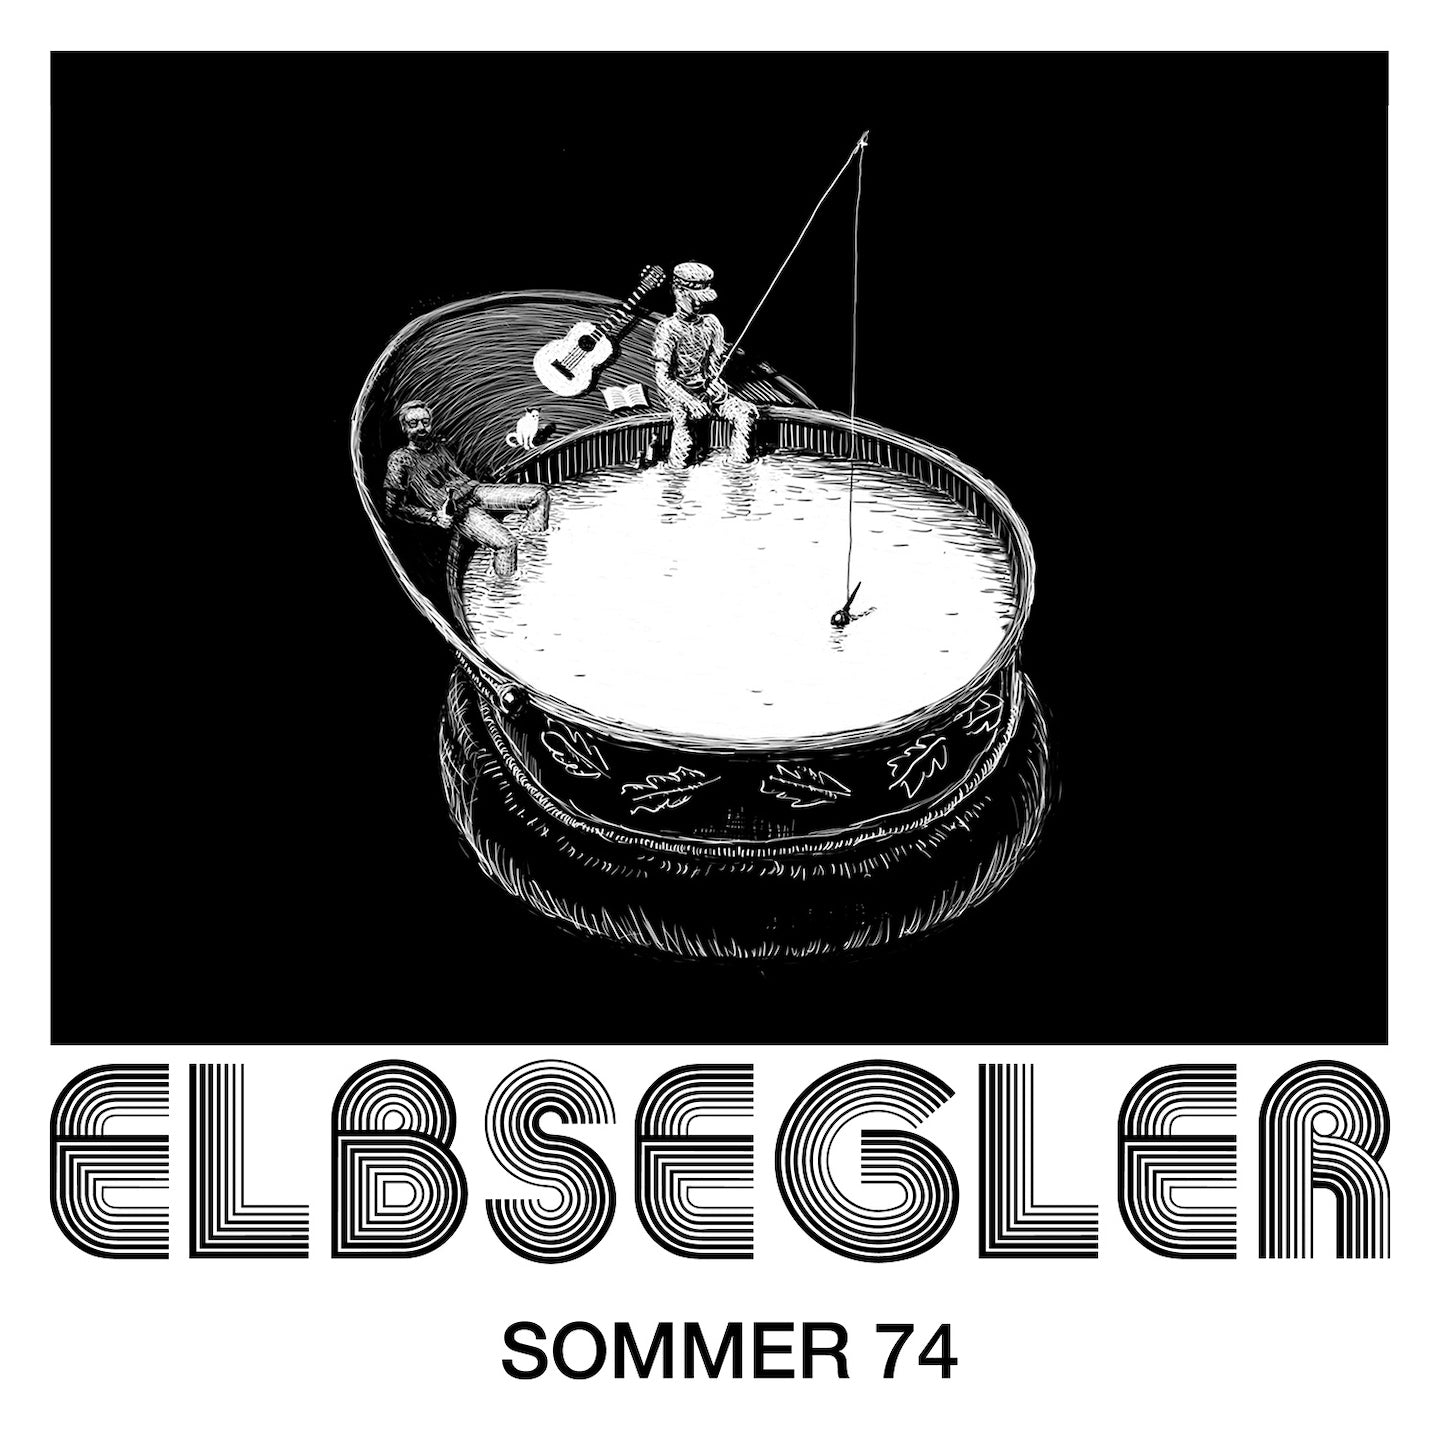 ELBSEGLER - Summer 74 (CD)